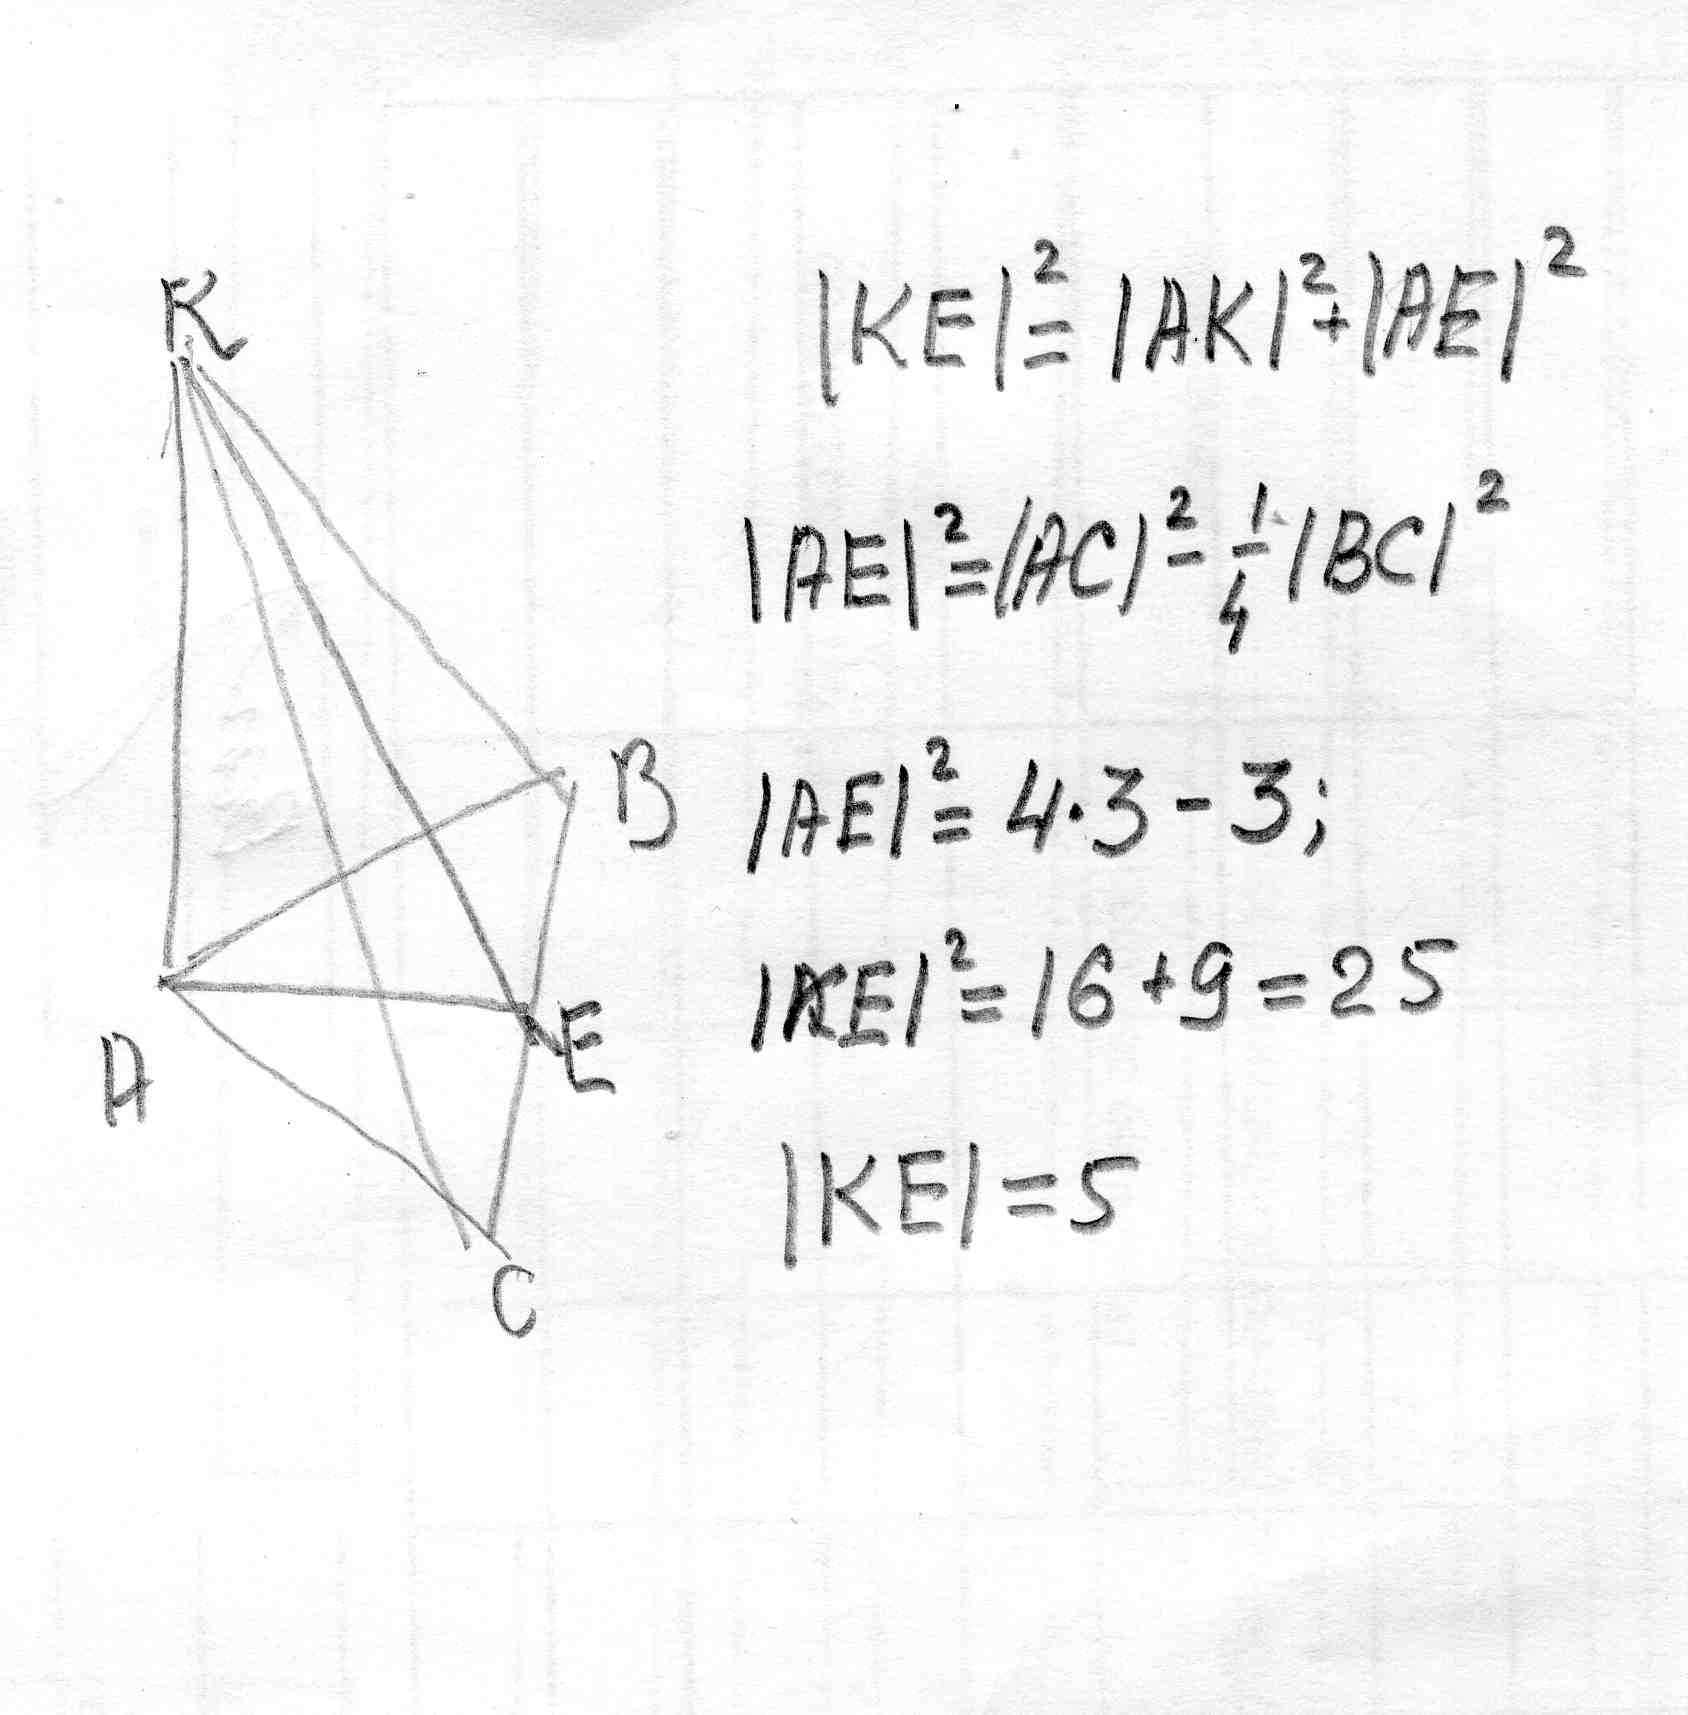 Стороны правильного треугольника авс равны 3. Стороны правильного треугольника ABC равны. Сторон правильного треугольника АВС равна 2корня из 3 к его плоскости. Стороны правильного треугольника ABC равна 2 корень из 3.